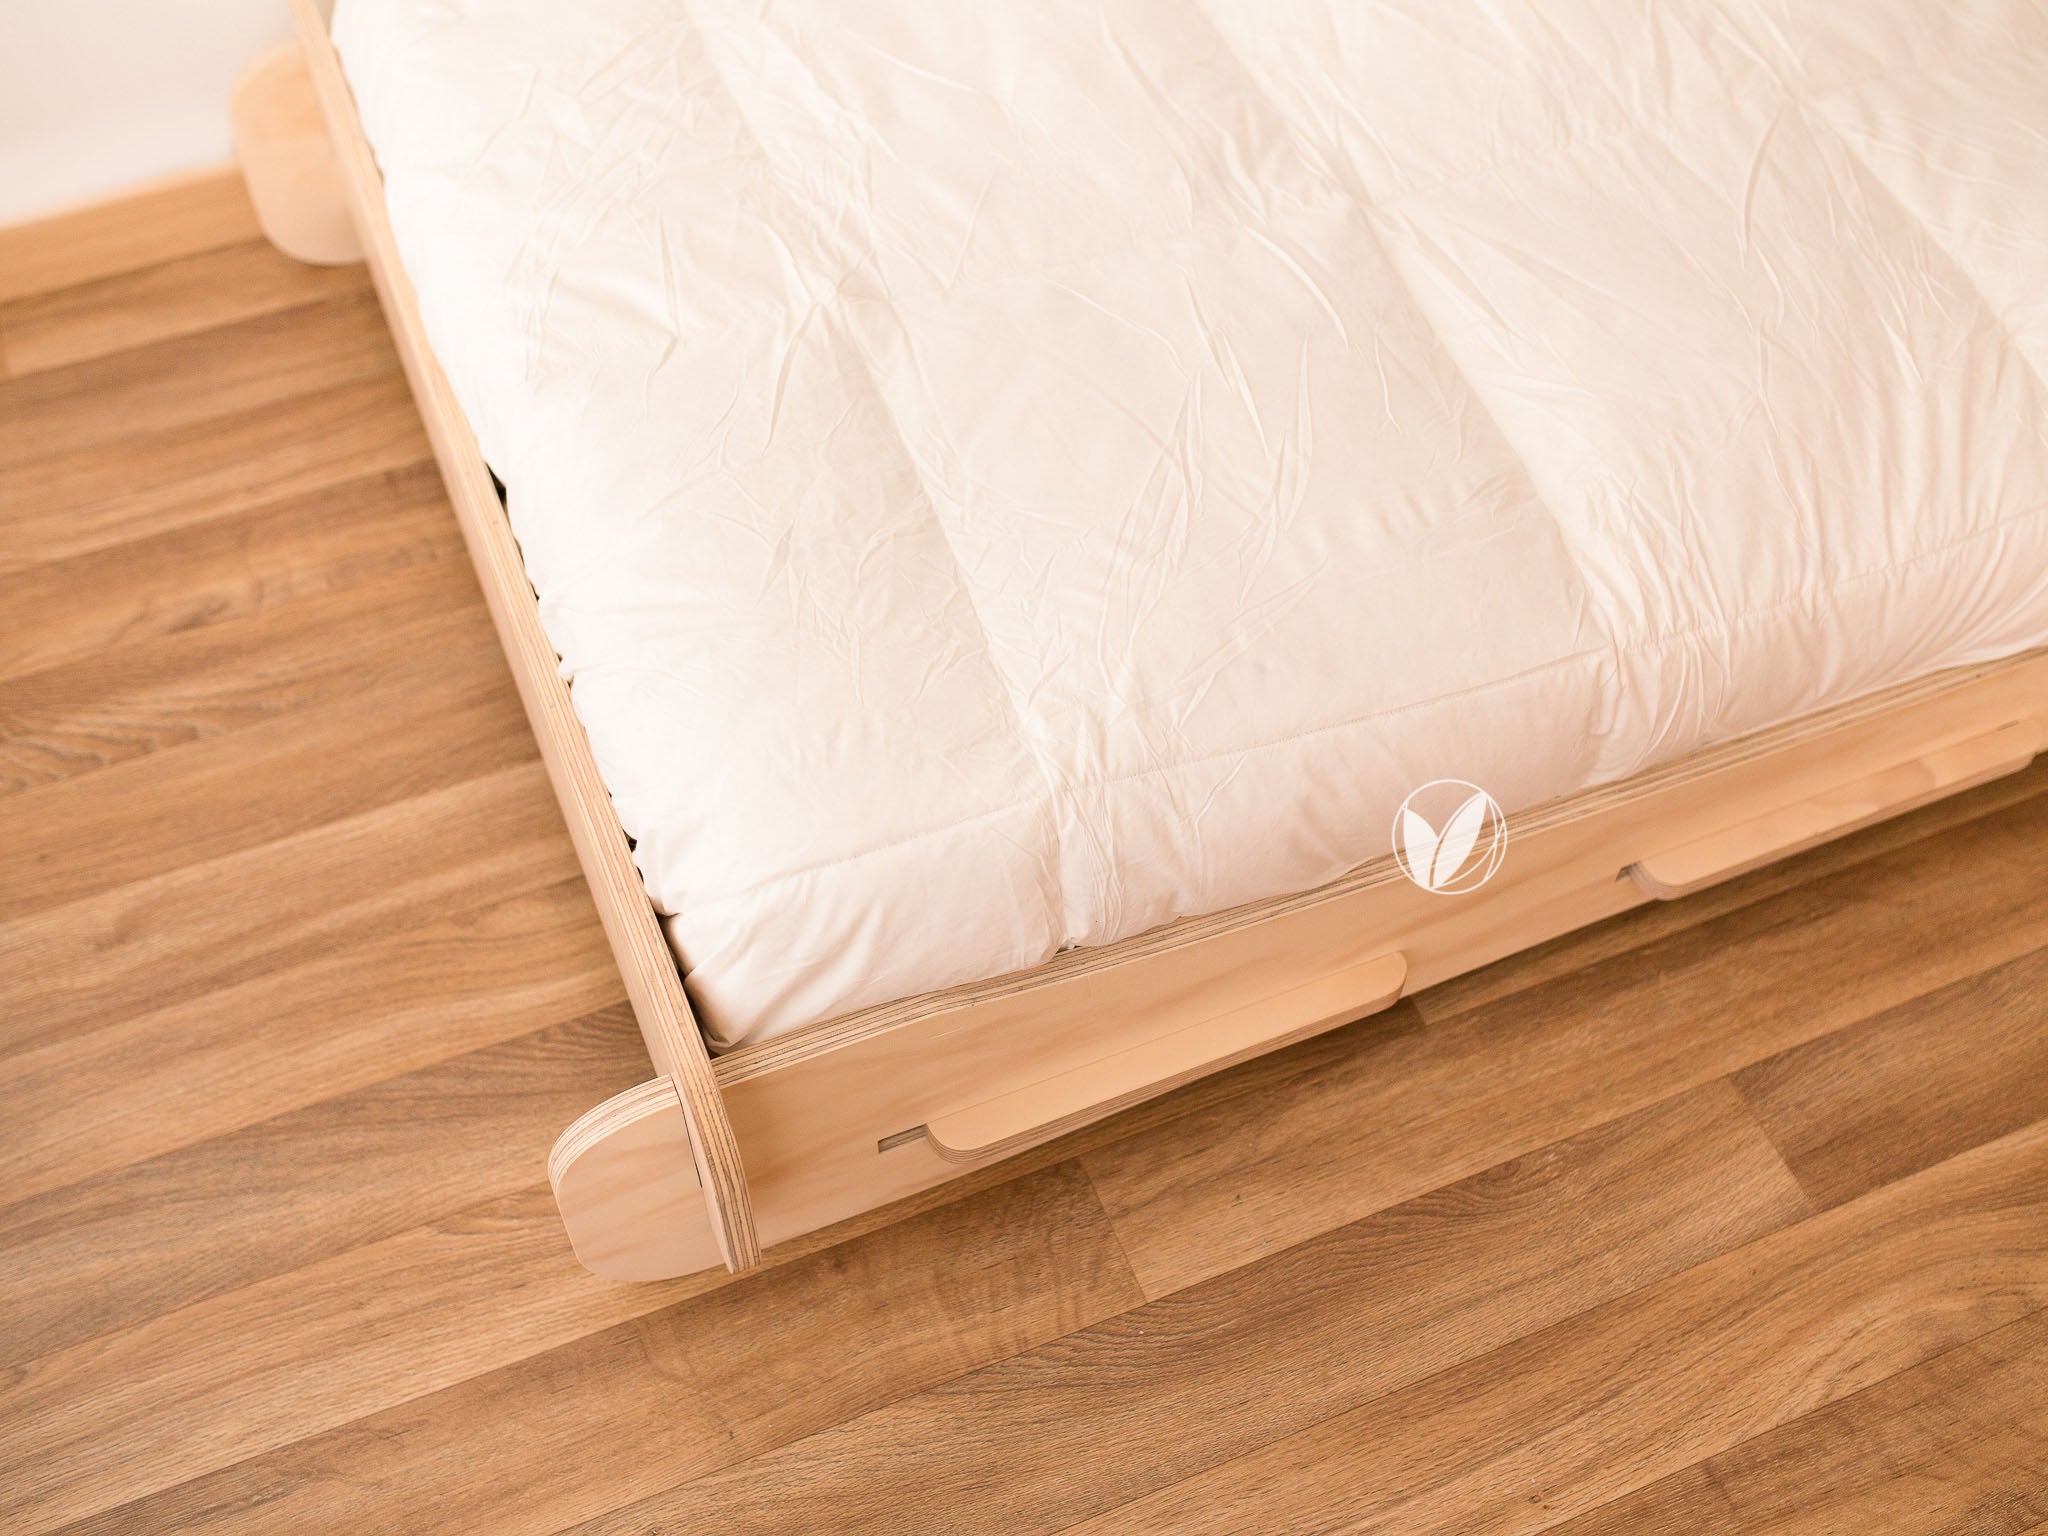 Las 20 mejores camas Montessori vistas en Instagram